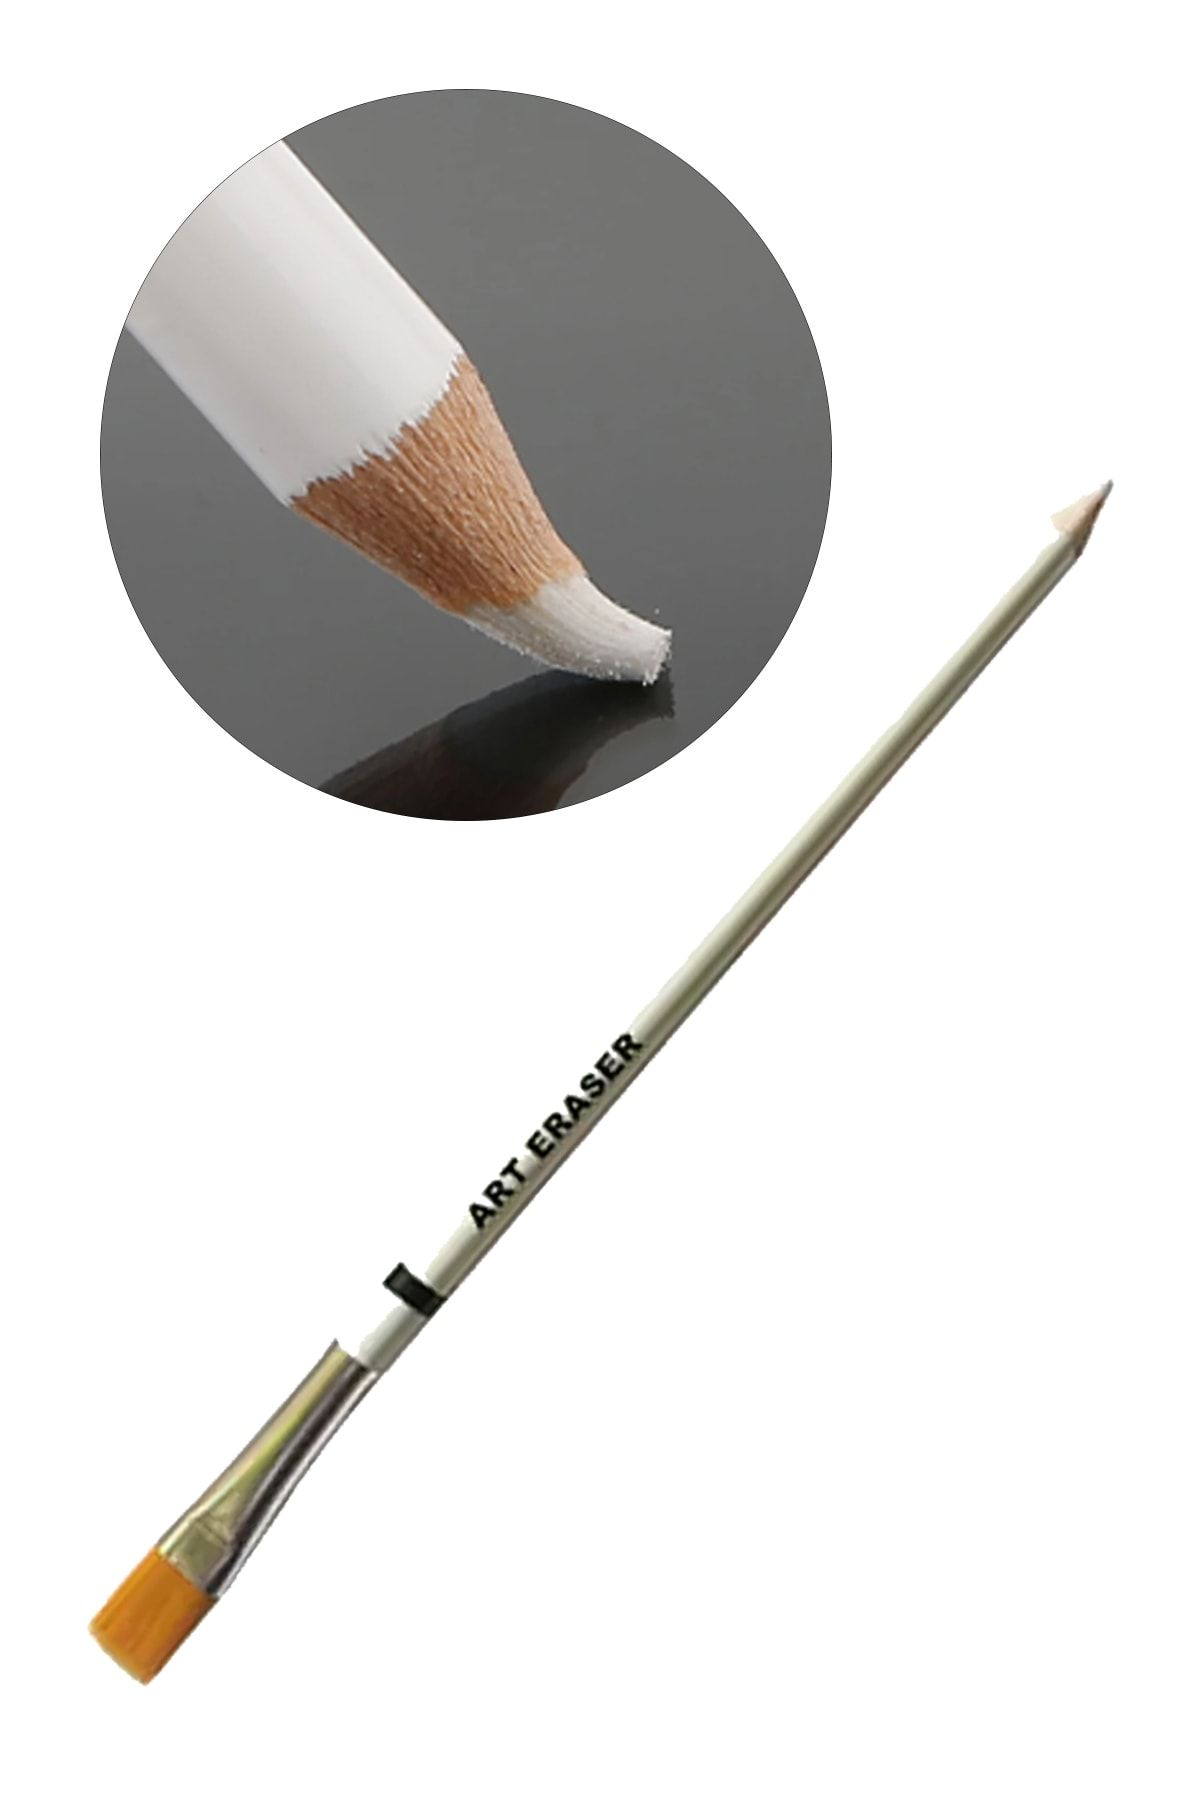 Vox Art Fırçalı Daktilo Silgisi - 21 Cm Fırçalı Kalem Silgi